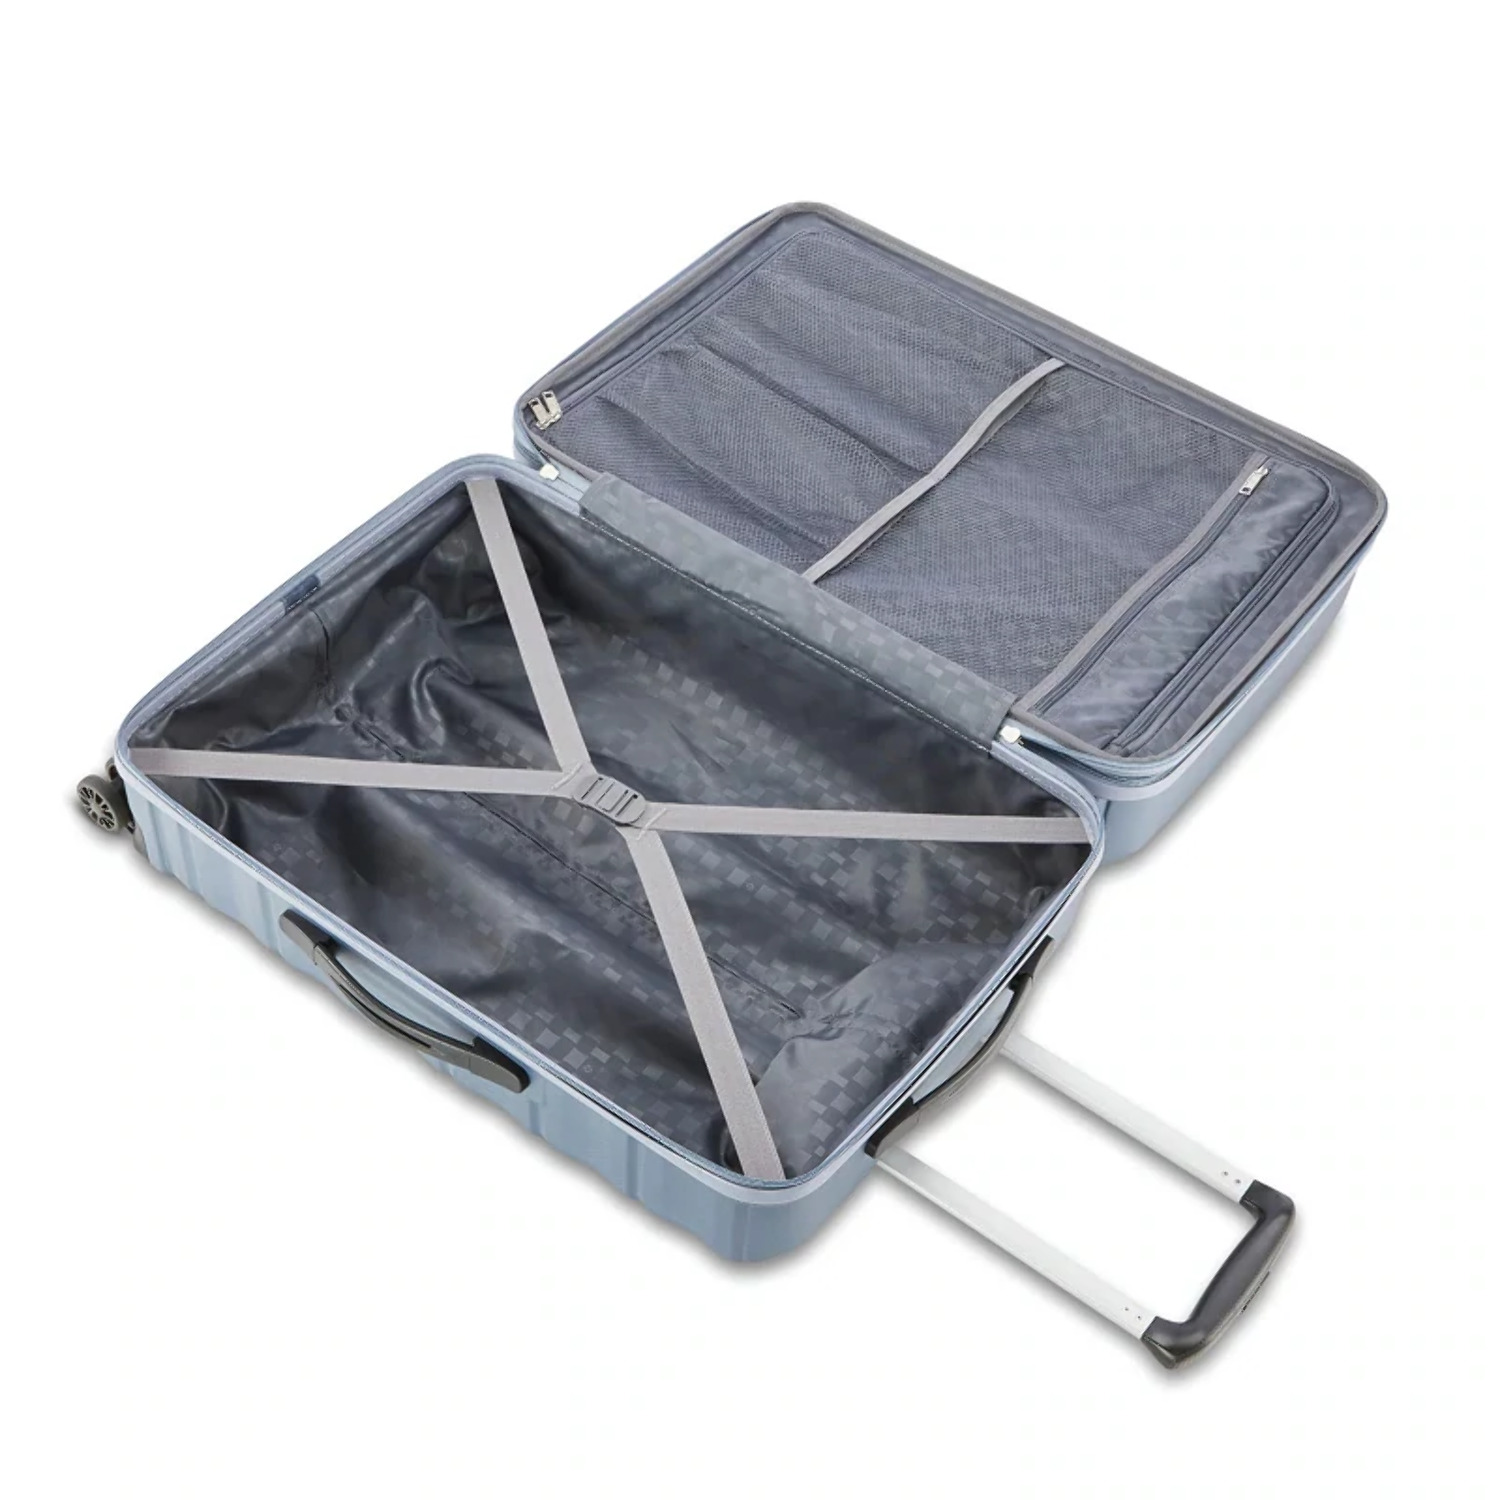 Samsonite Kingsbury Hardside Suitcase 2-Piece Luggage Set - Slate Blue - New - image 7 of 11